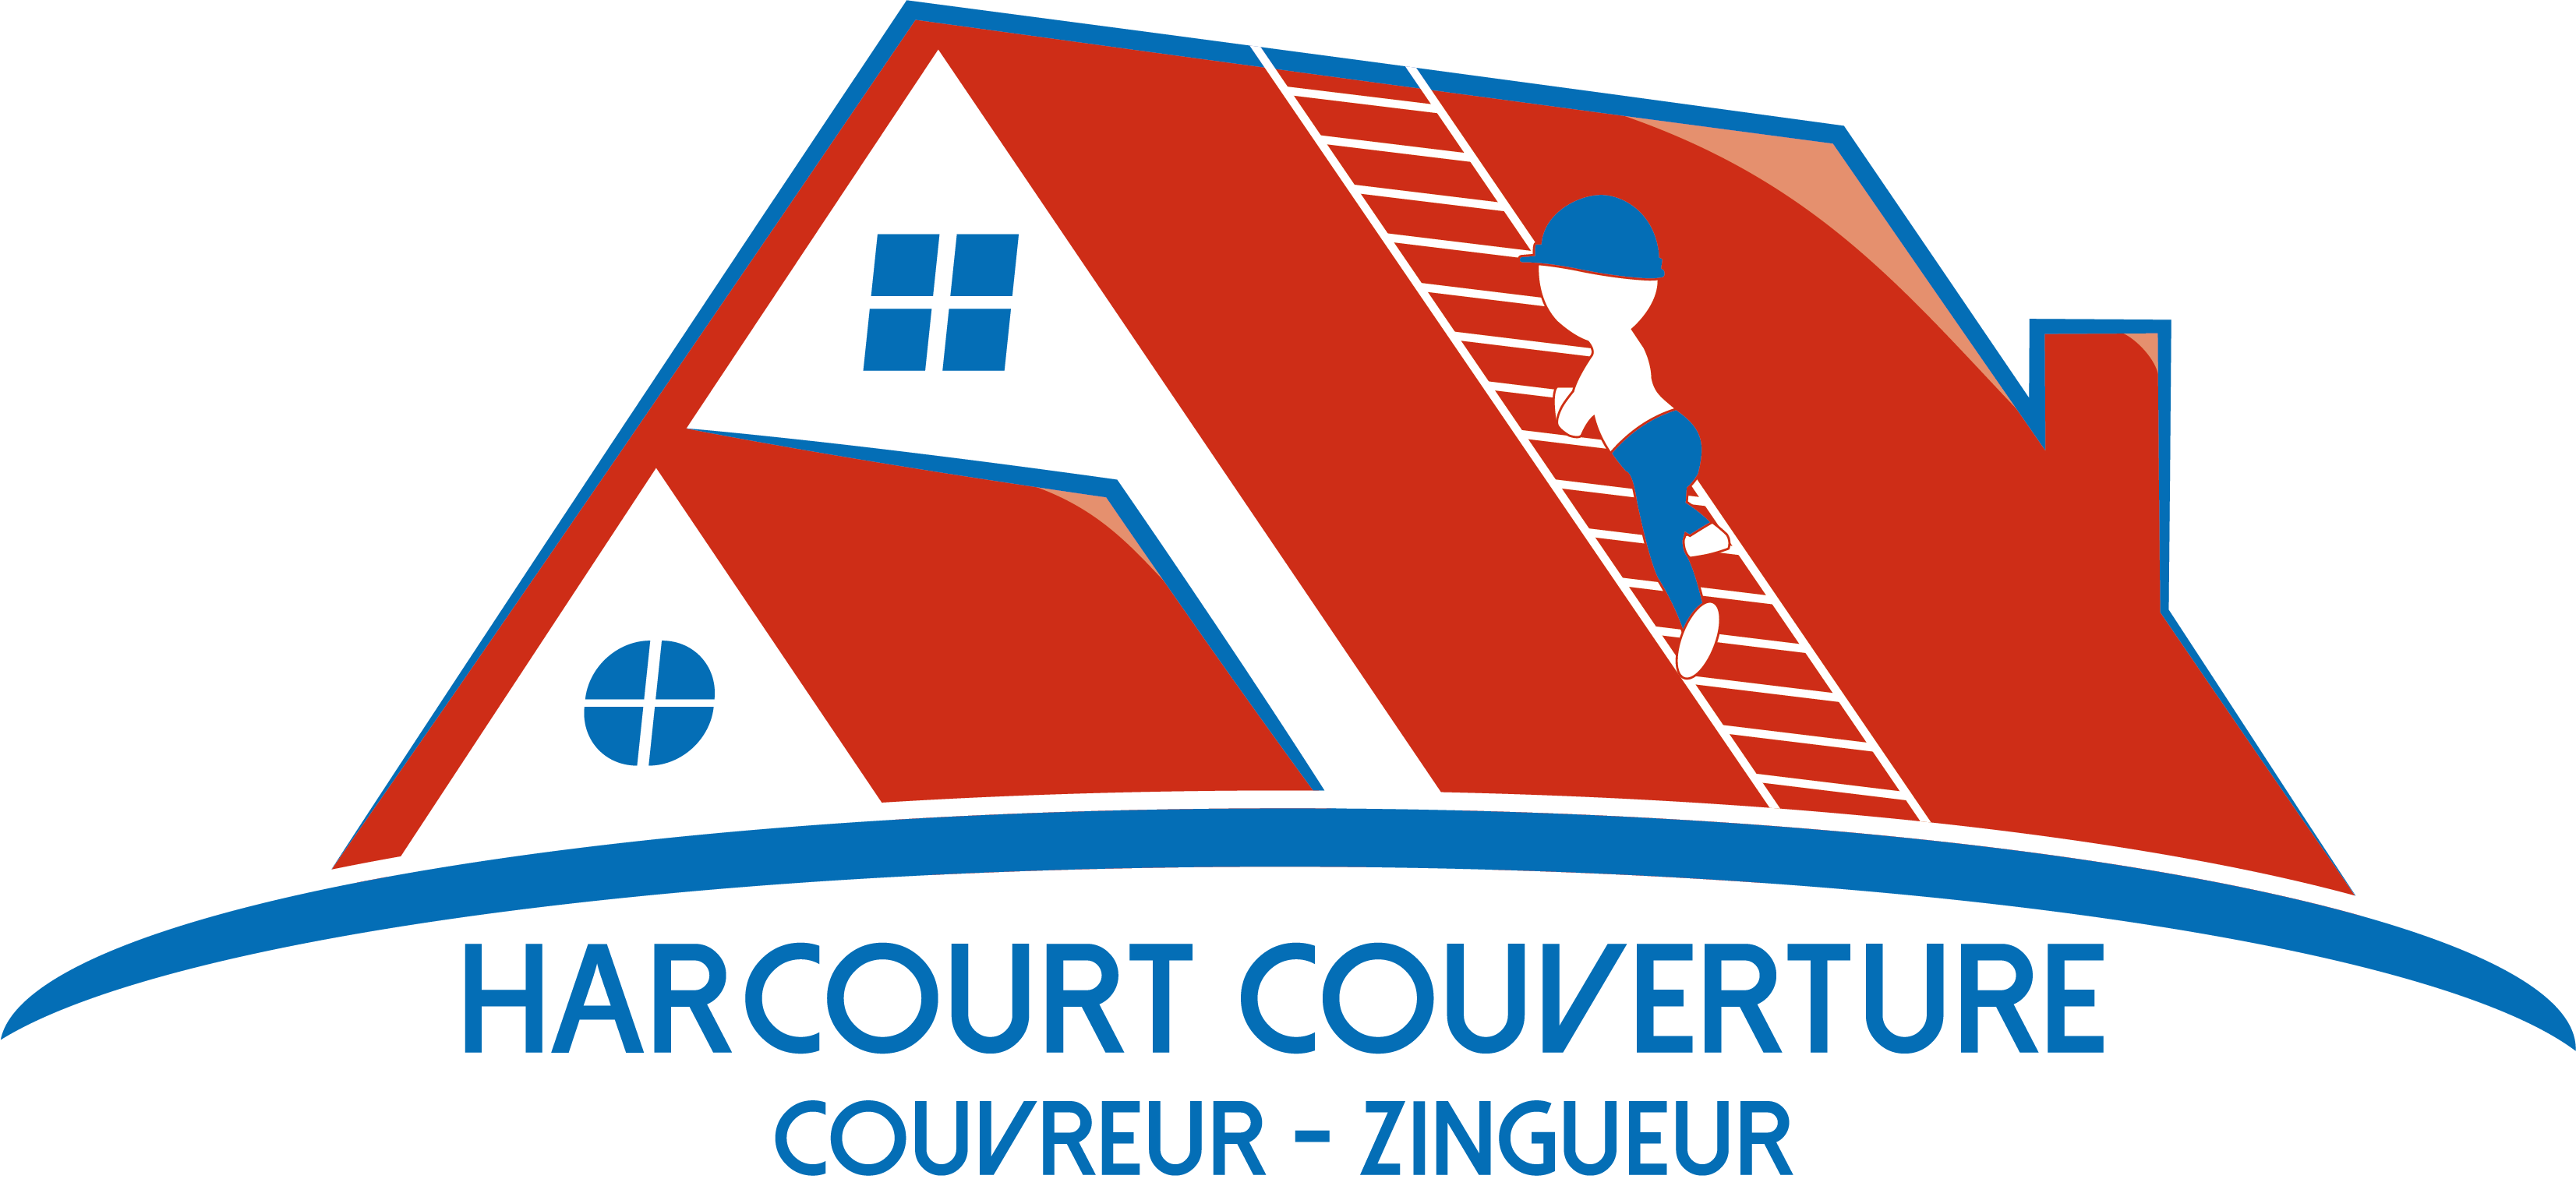 Harcourt Couverture - logo